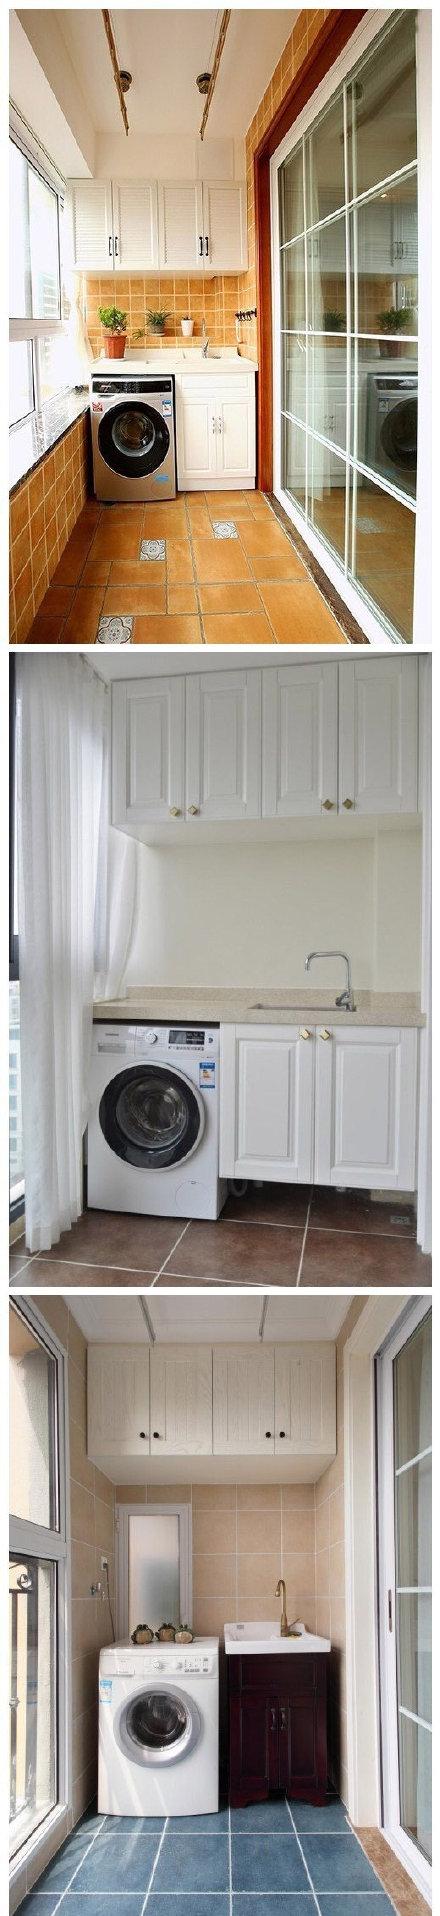 洗衣机房装修效果图图片